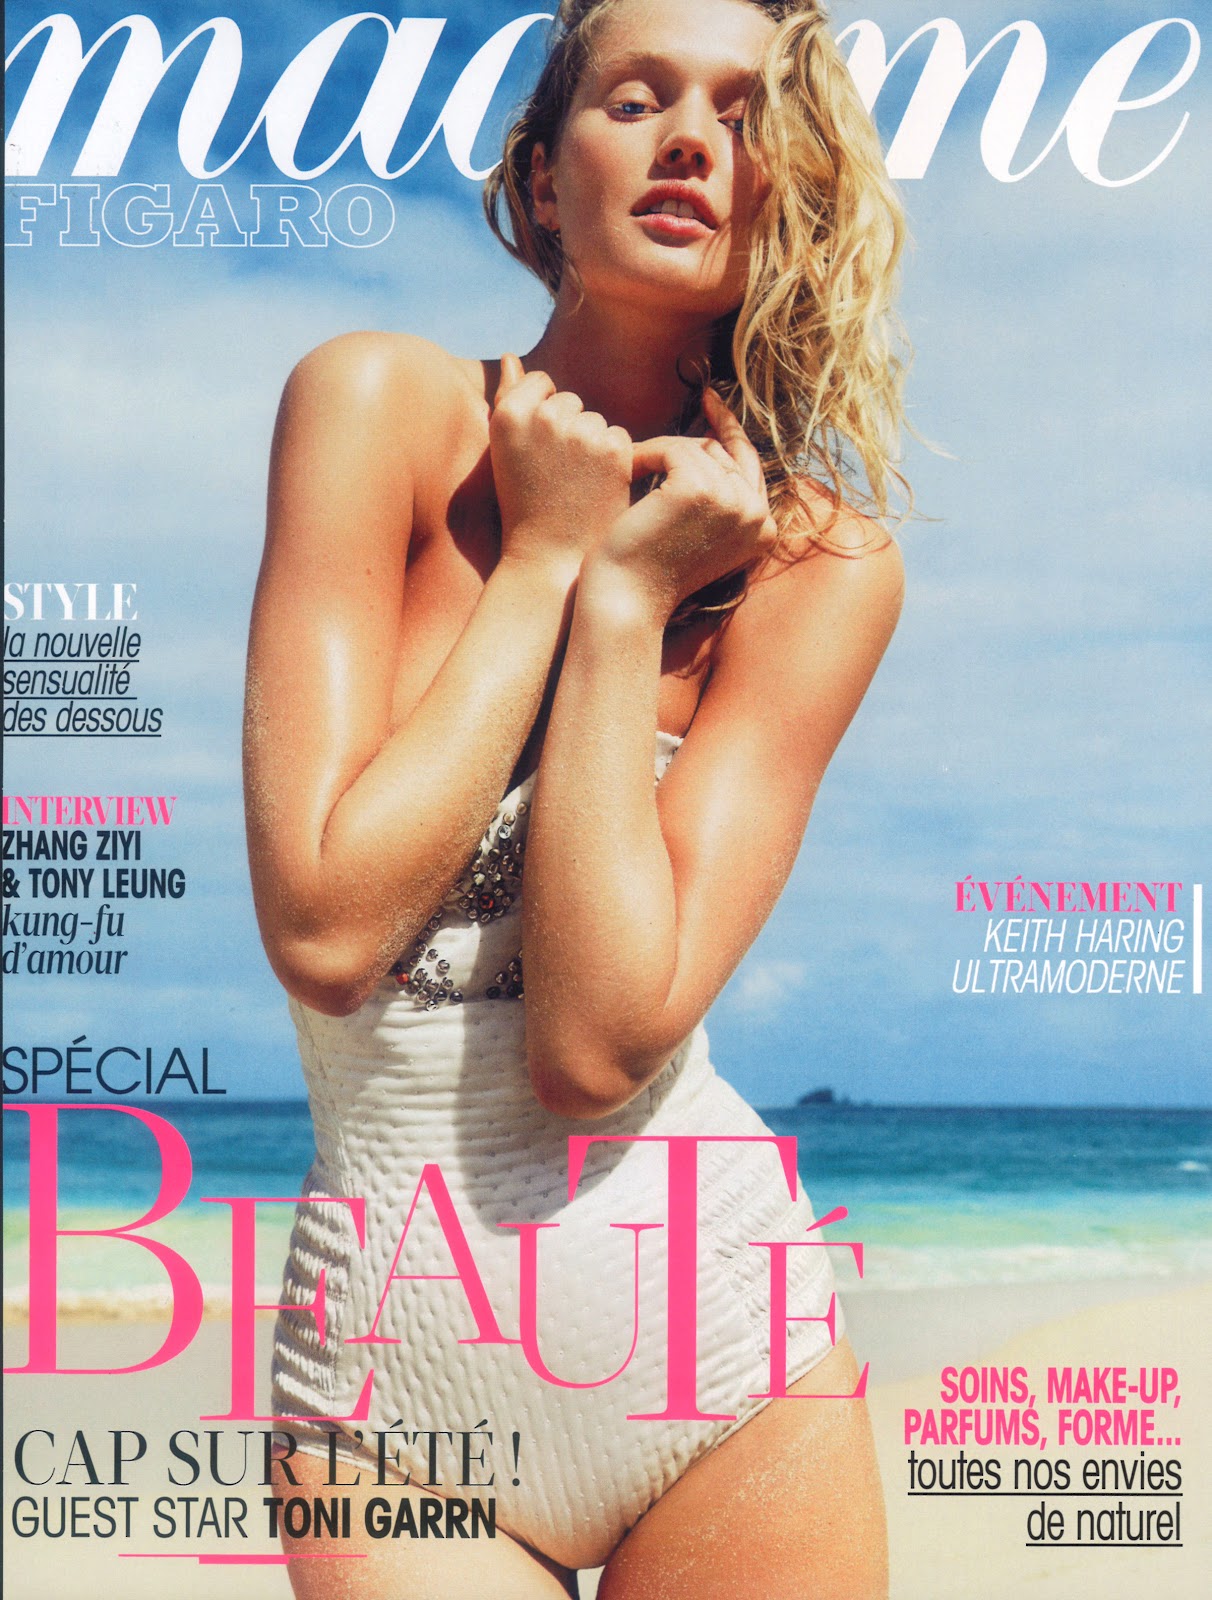 TONI GARNN for Madame Figaro by Nico - Women Management Paris - Models ...